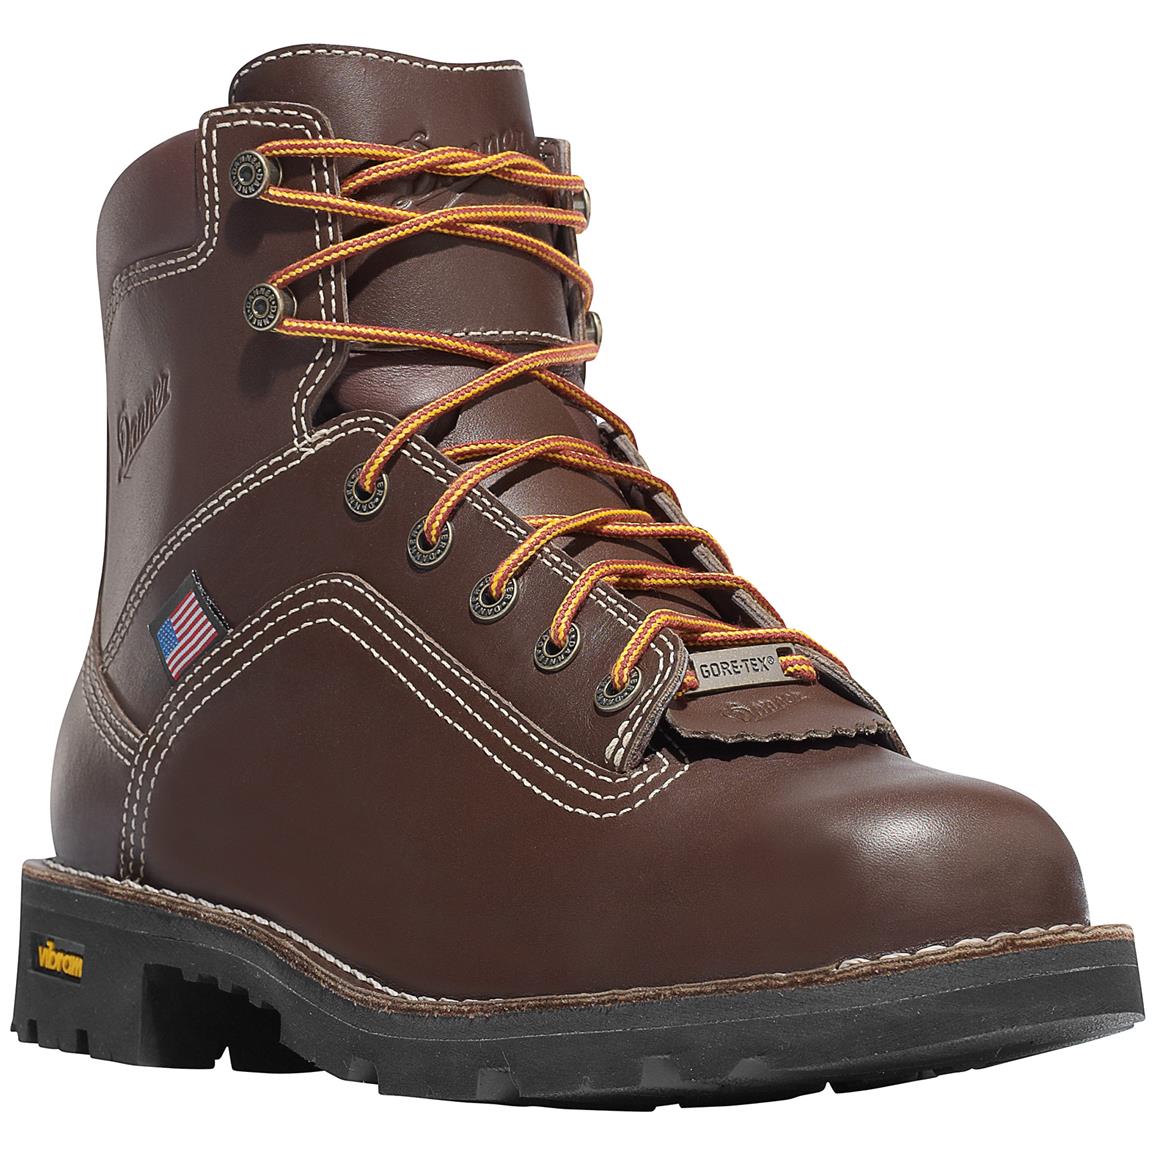 Men's Danner 6" Quarry USA GTX Waterproof Work Boots, Brown - 614605